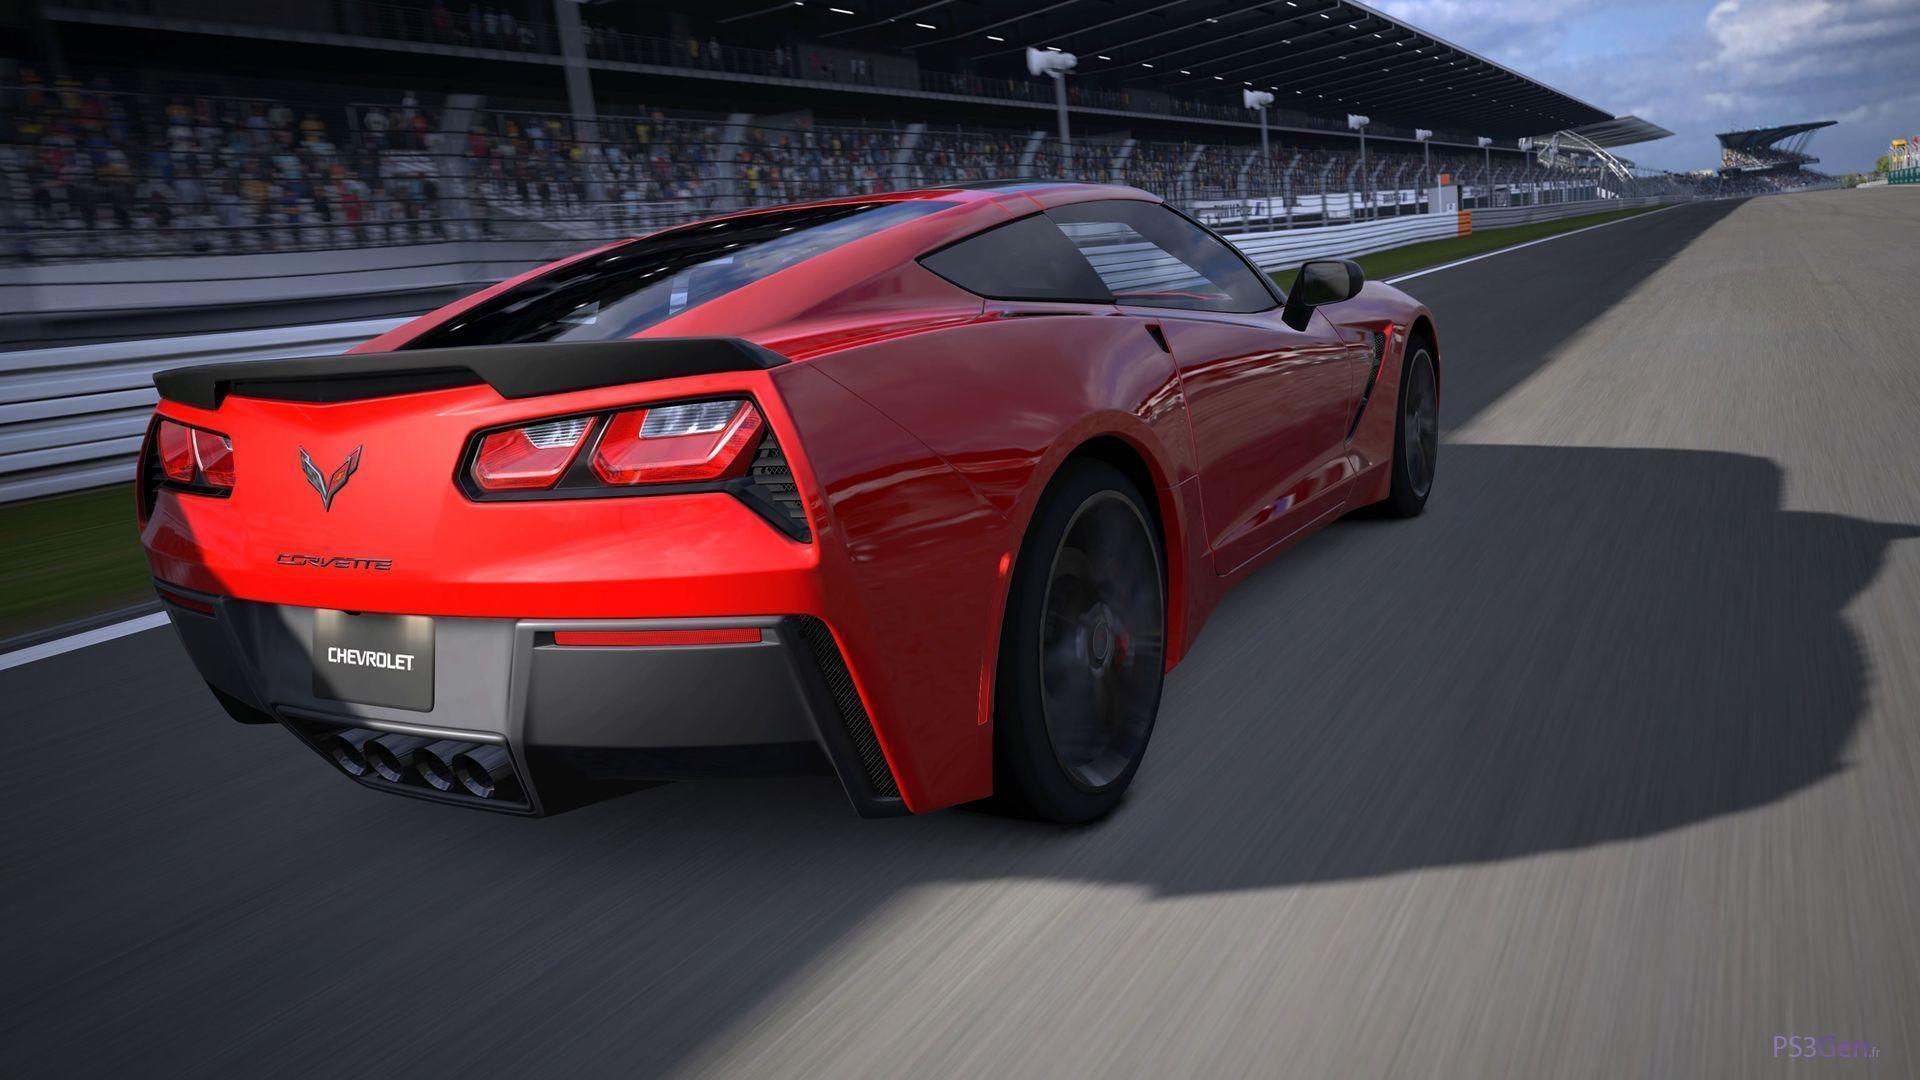 image For > Corvette 2014 C7 Wallpaper